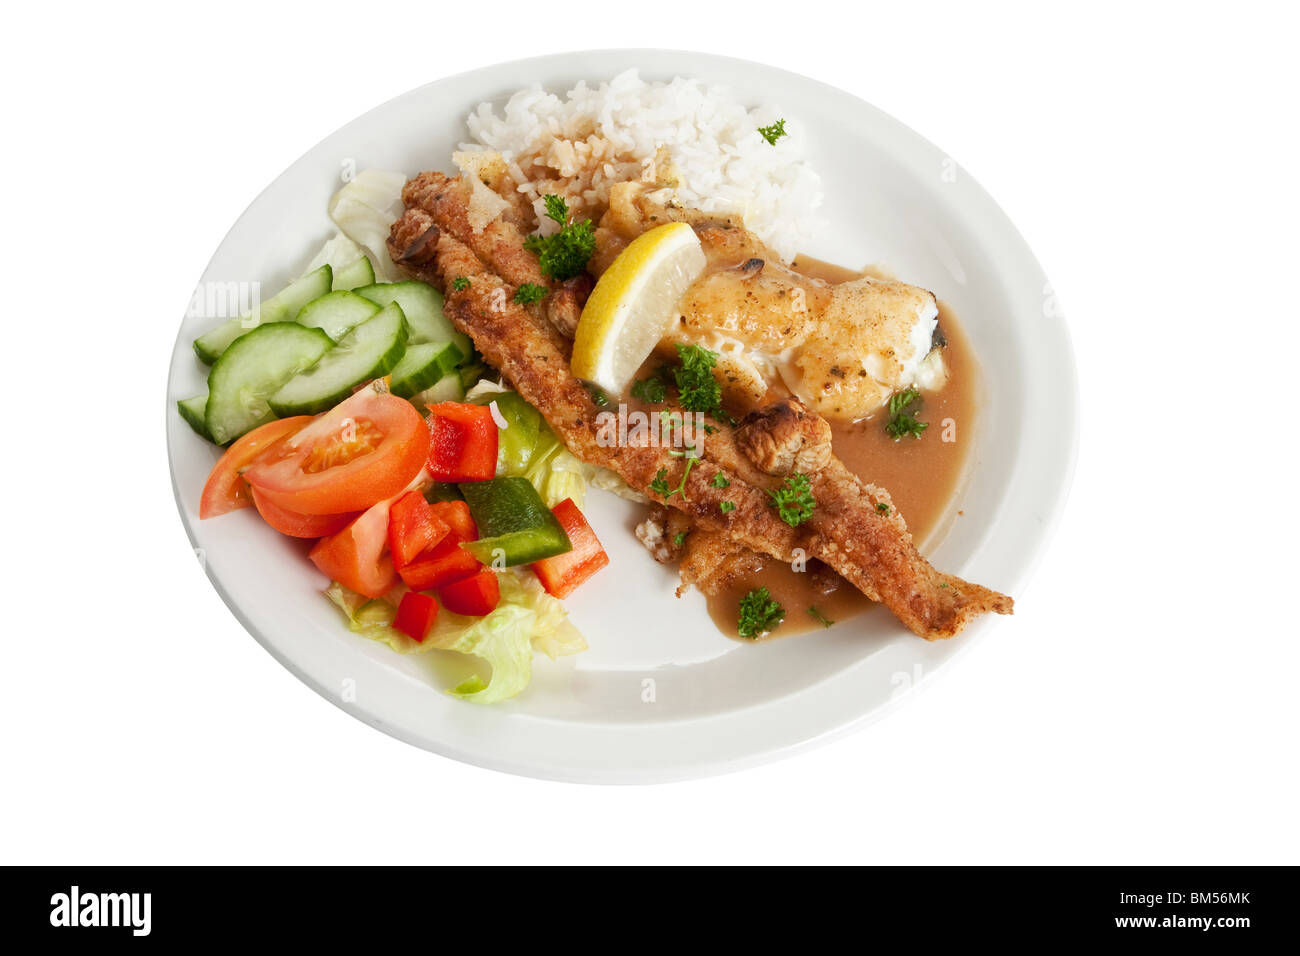 Un plat de poisson frit et riz avec la quantité recommandée de nourriture pour une personne de taille moyenne. Banque D'Images